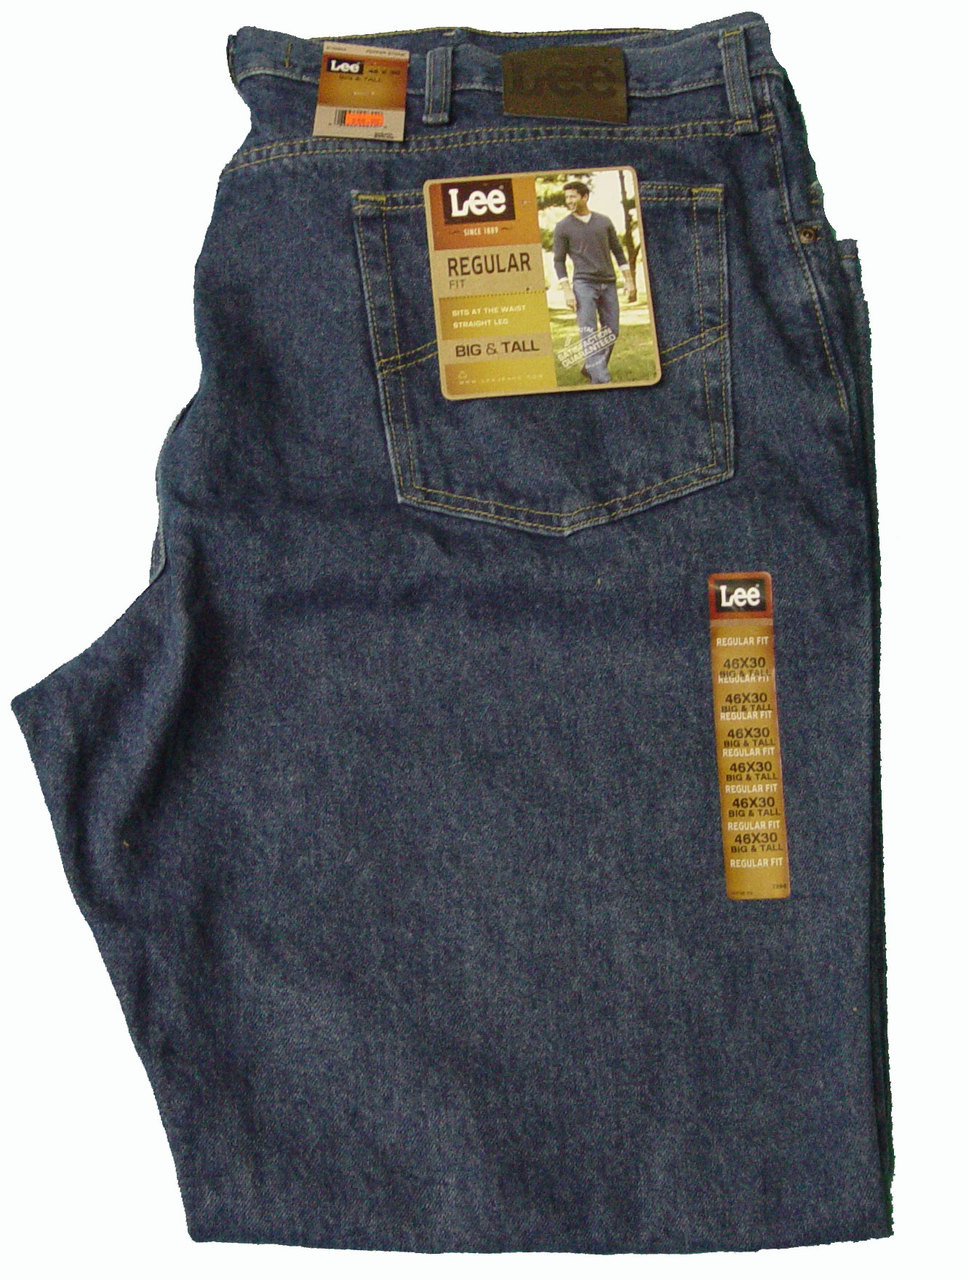 Lee Jeans Regular Fit 42, 44, 46, 48 